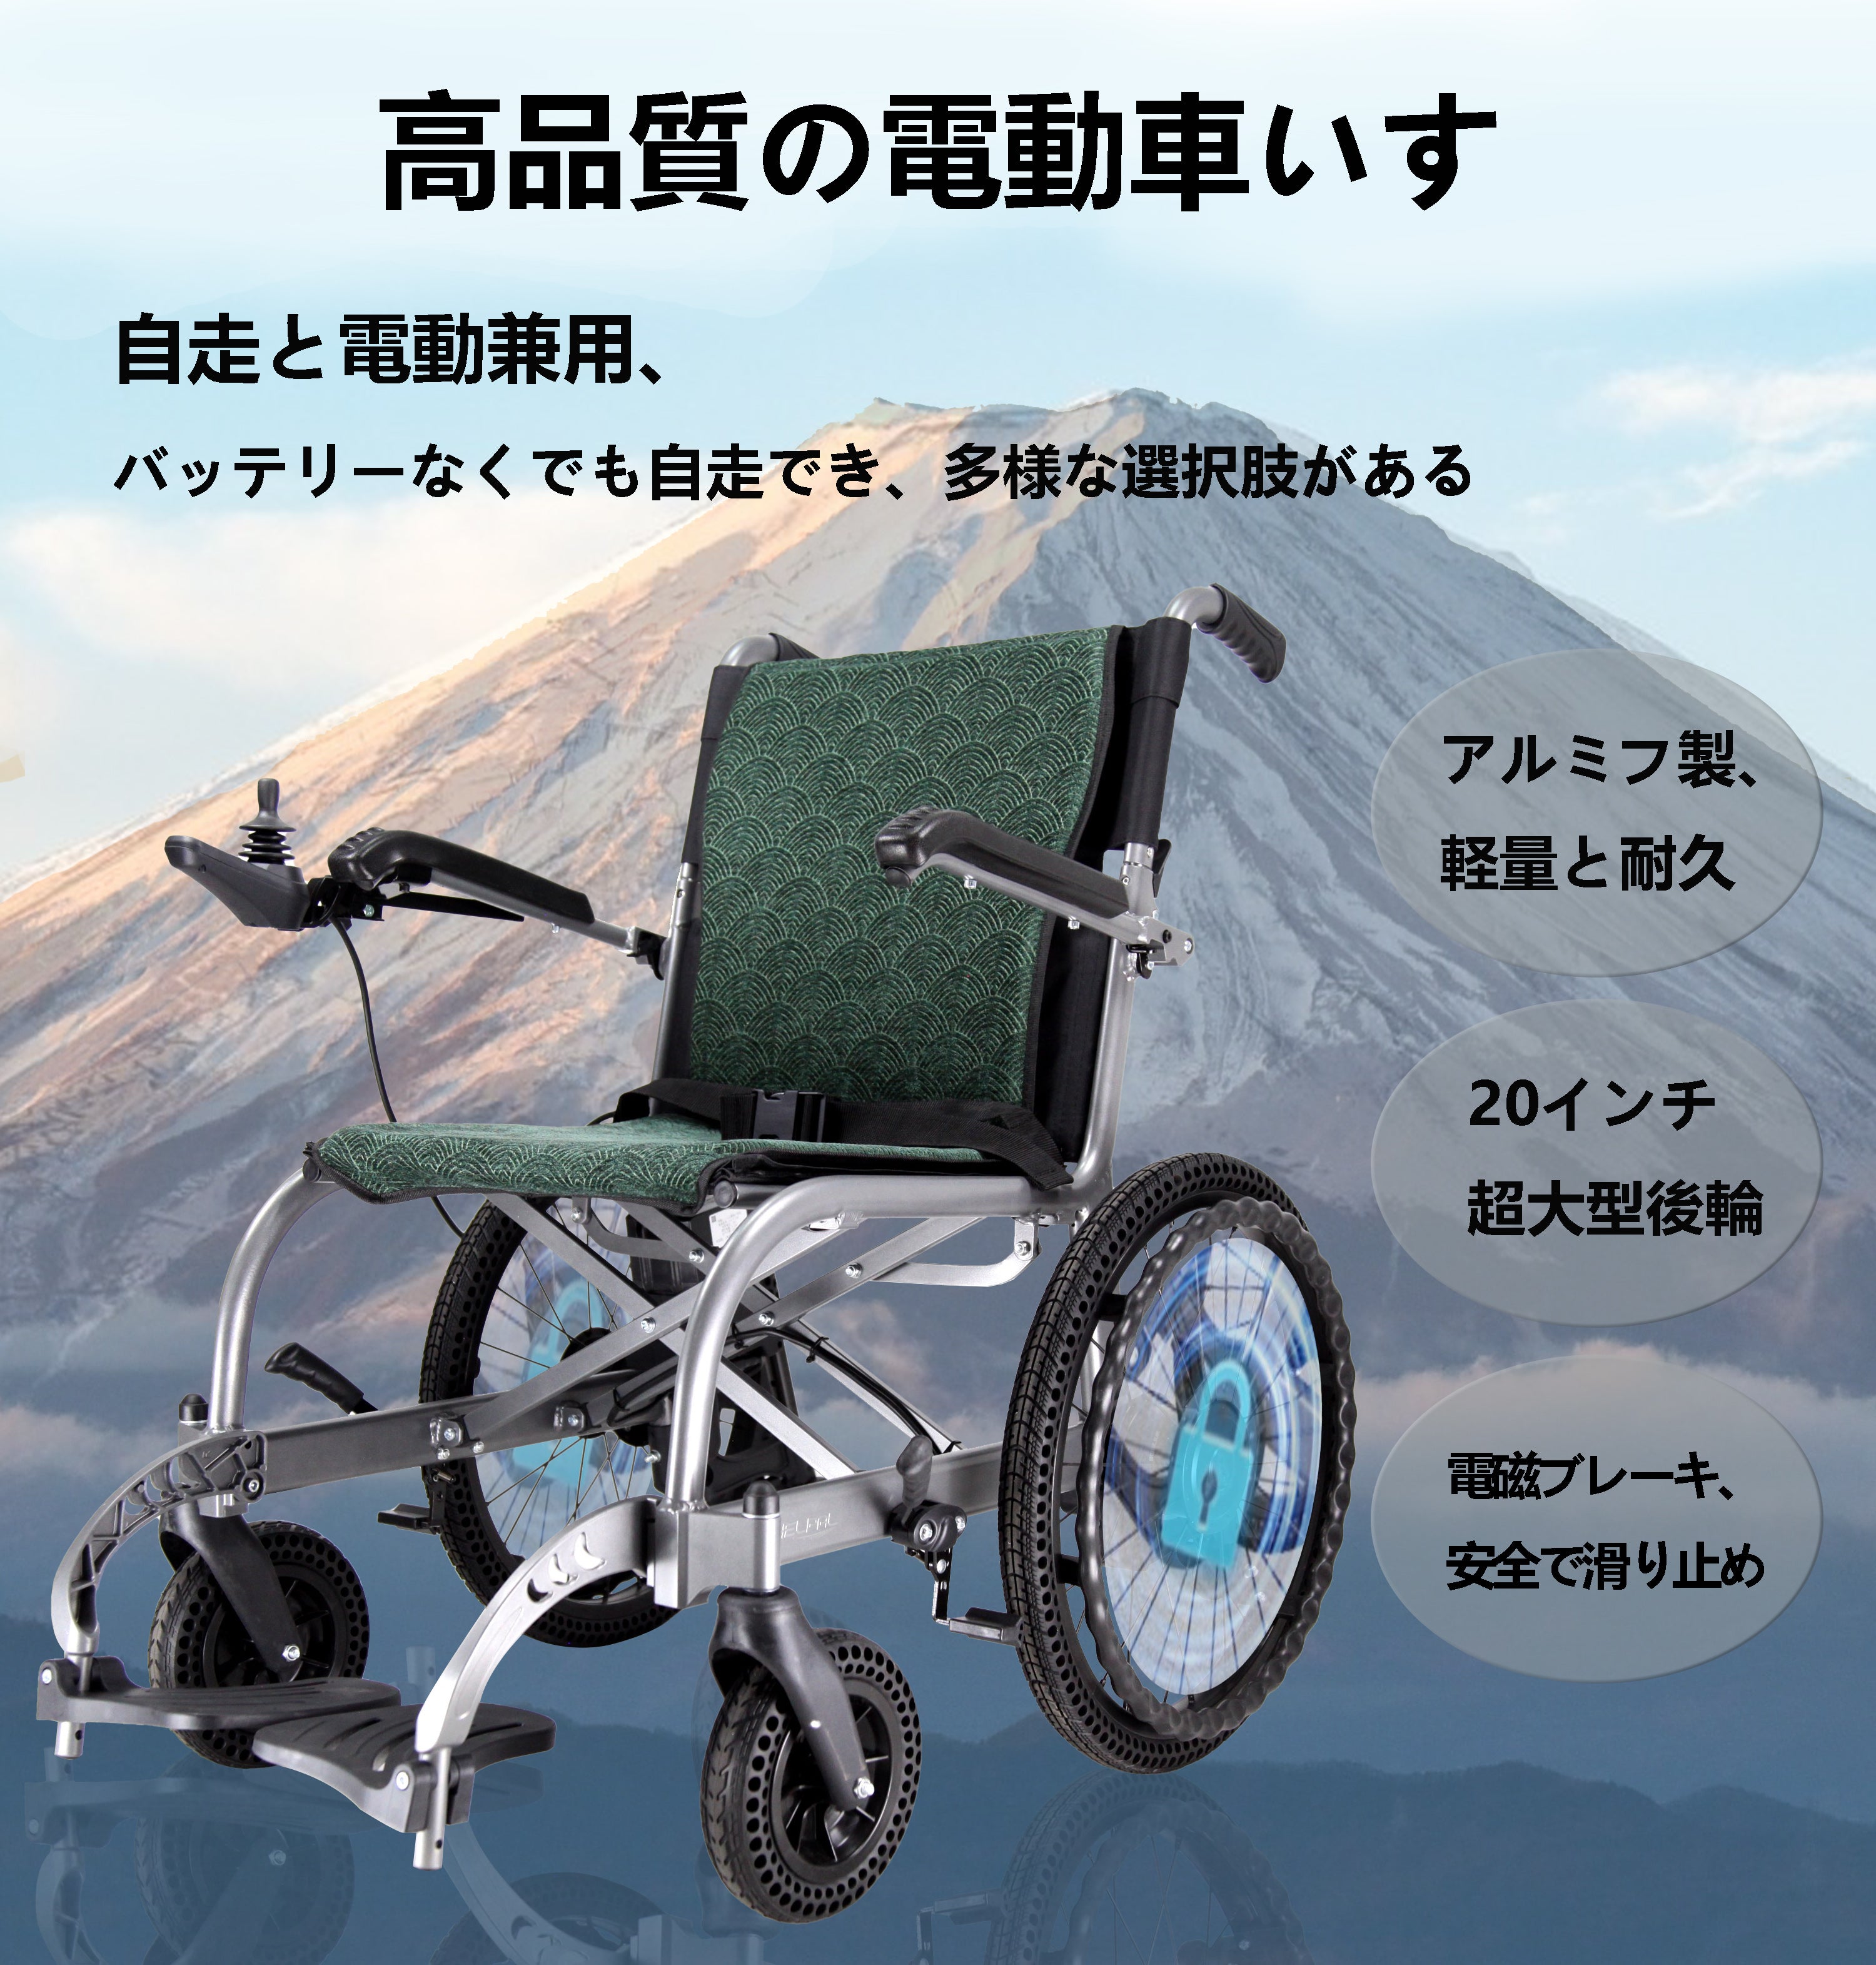 新品電動車椅子をお譲りします - 神奈川県のその他